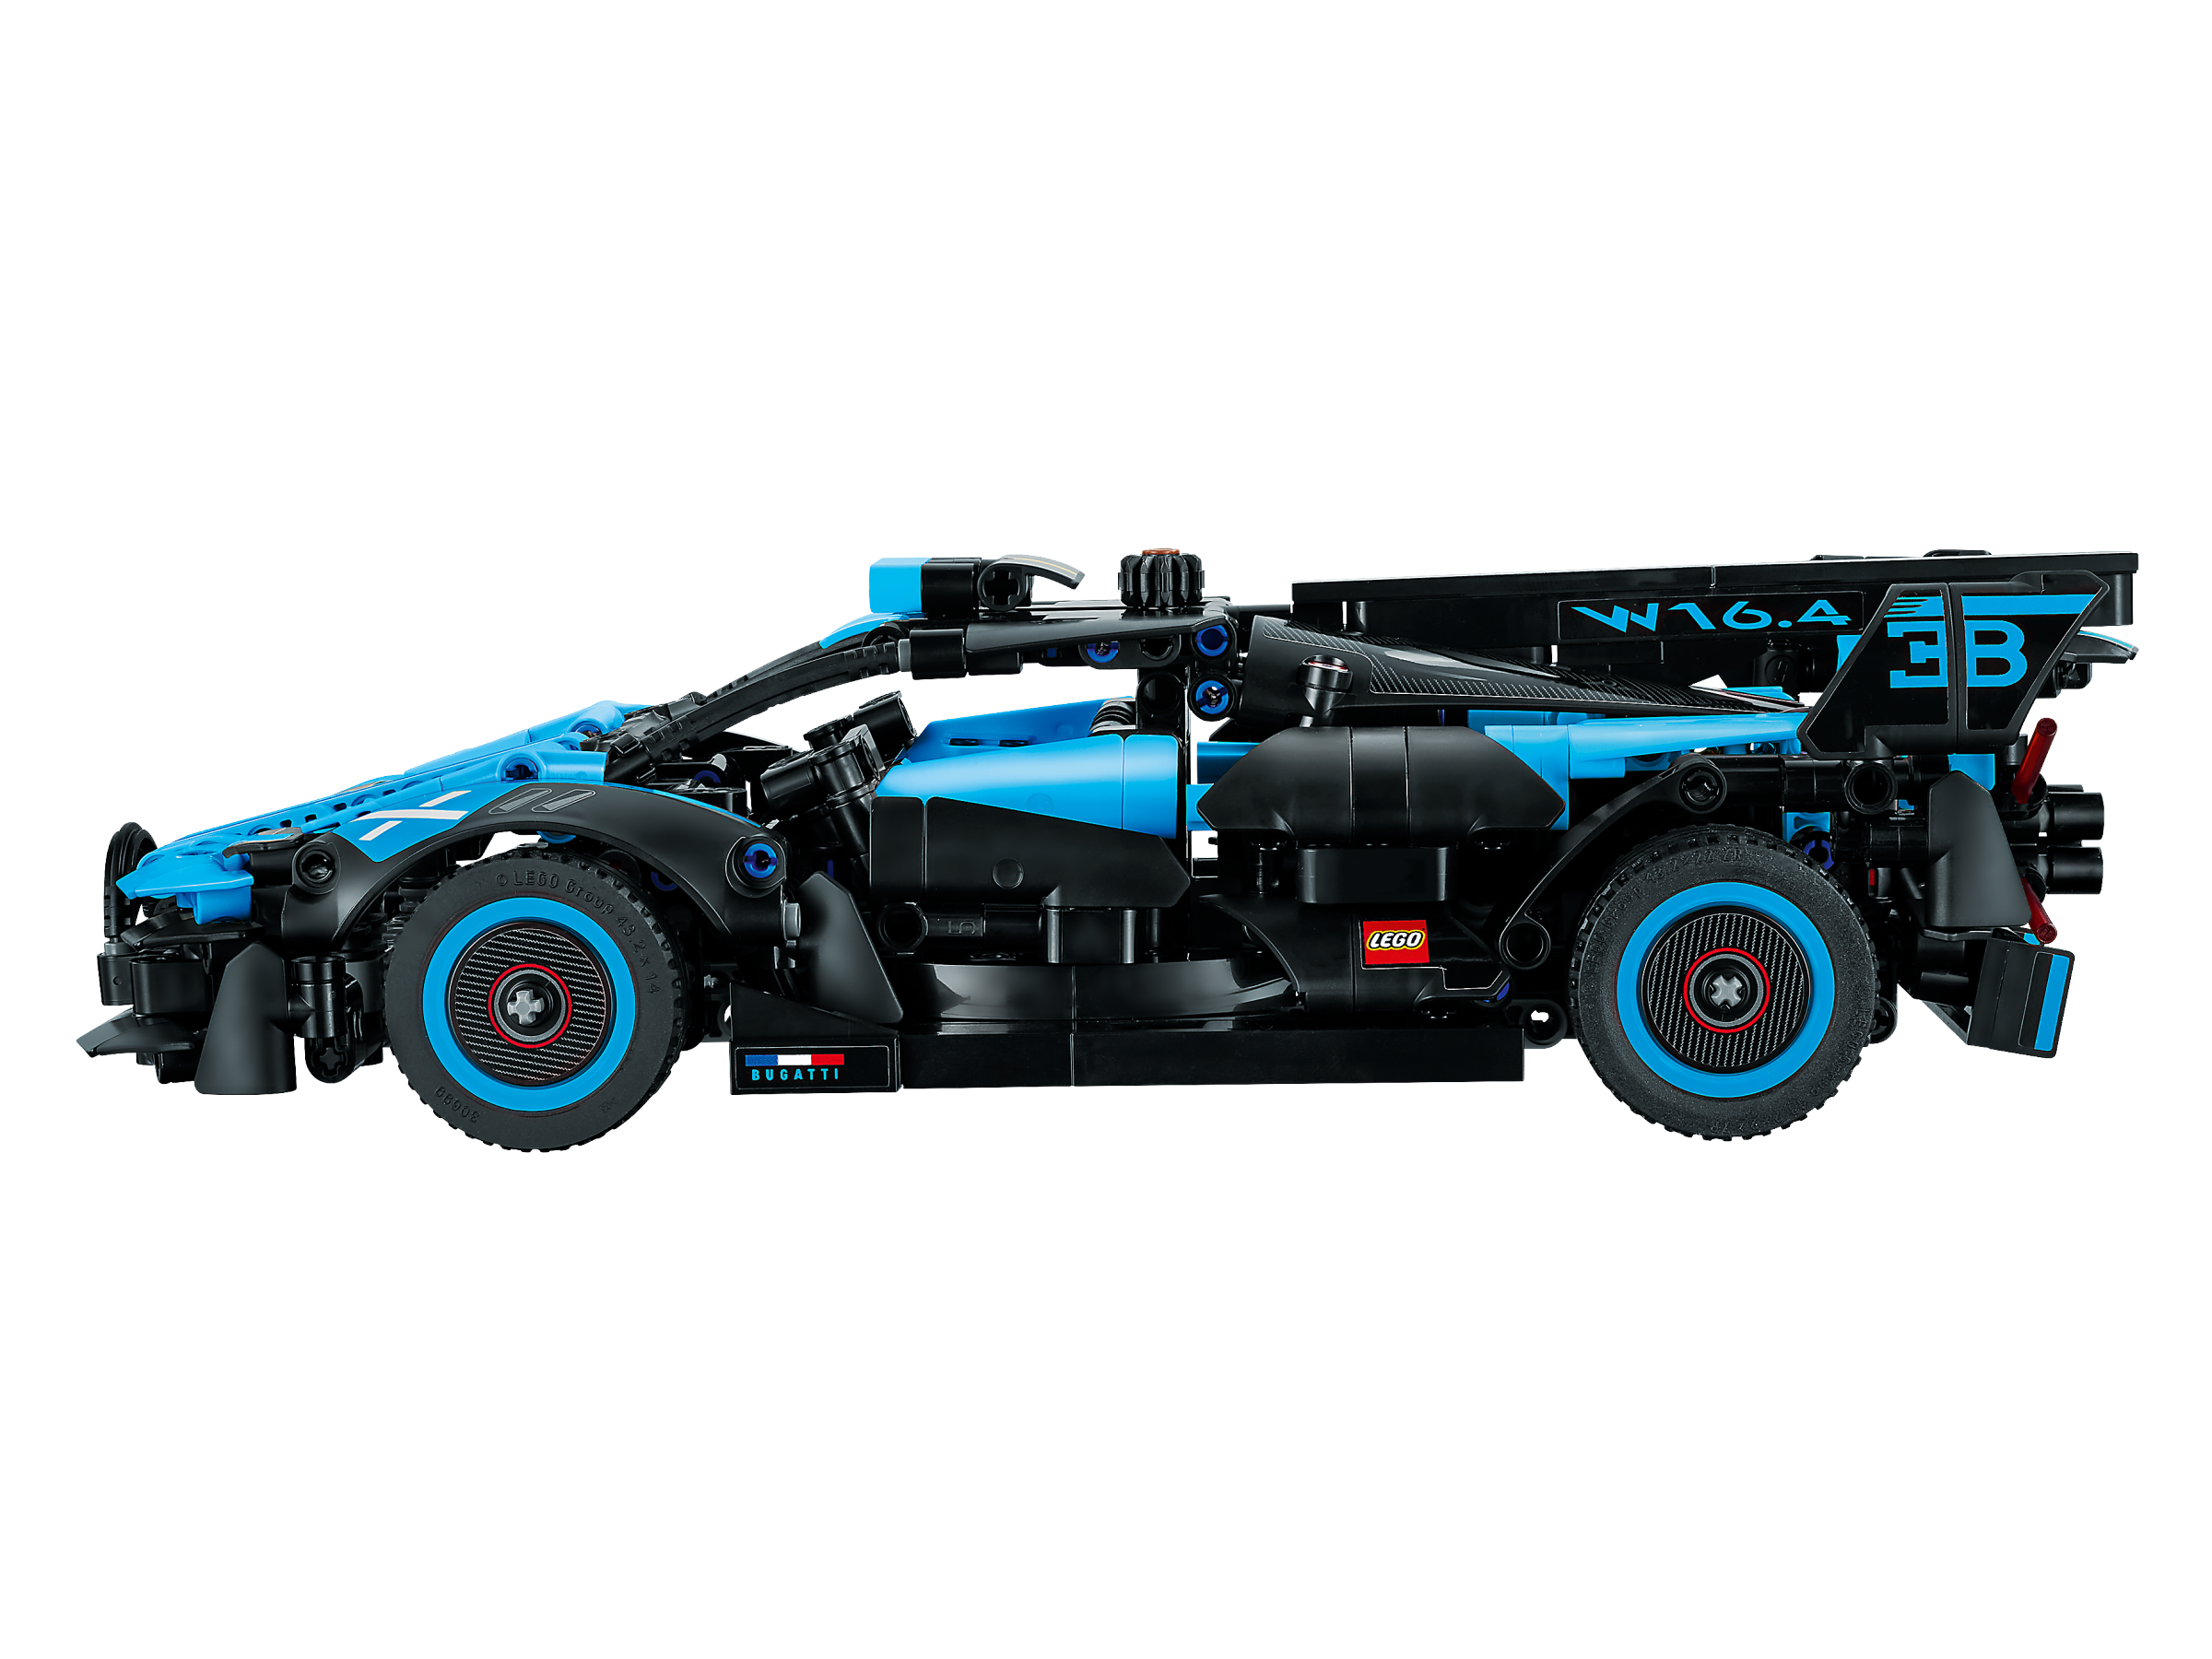 42162 - LEGO® Technic - Bugatti Bolide Agile Blue LEGO : King